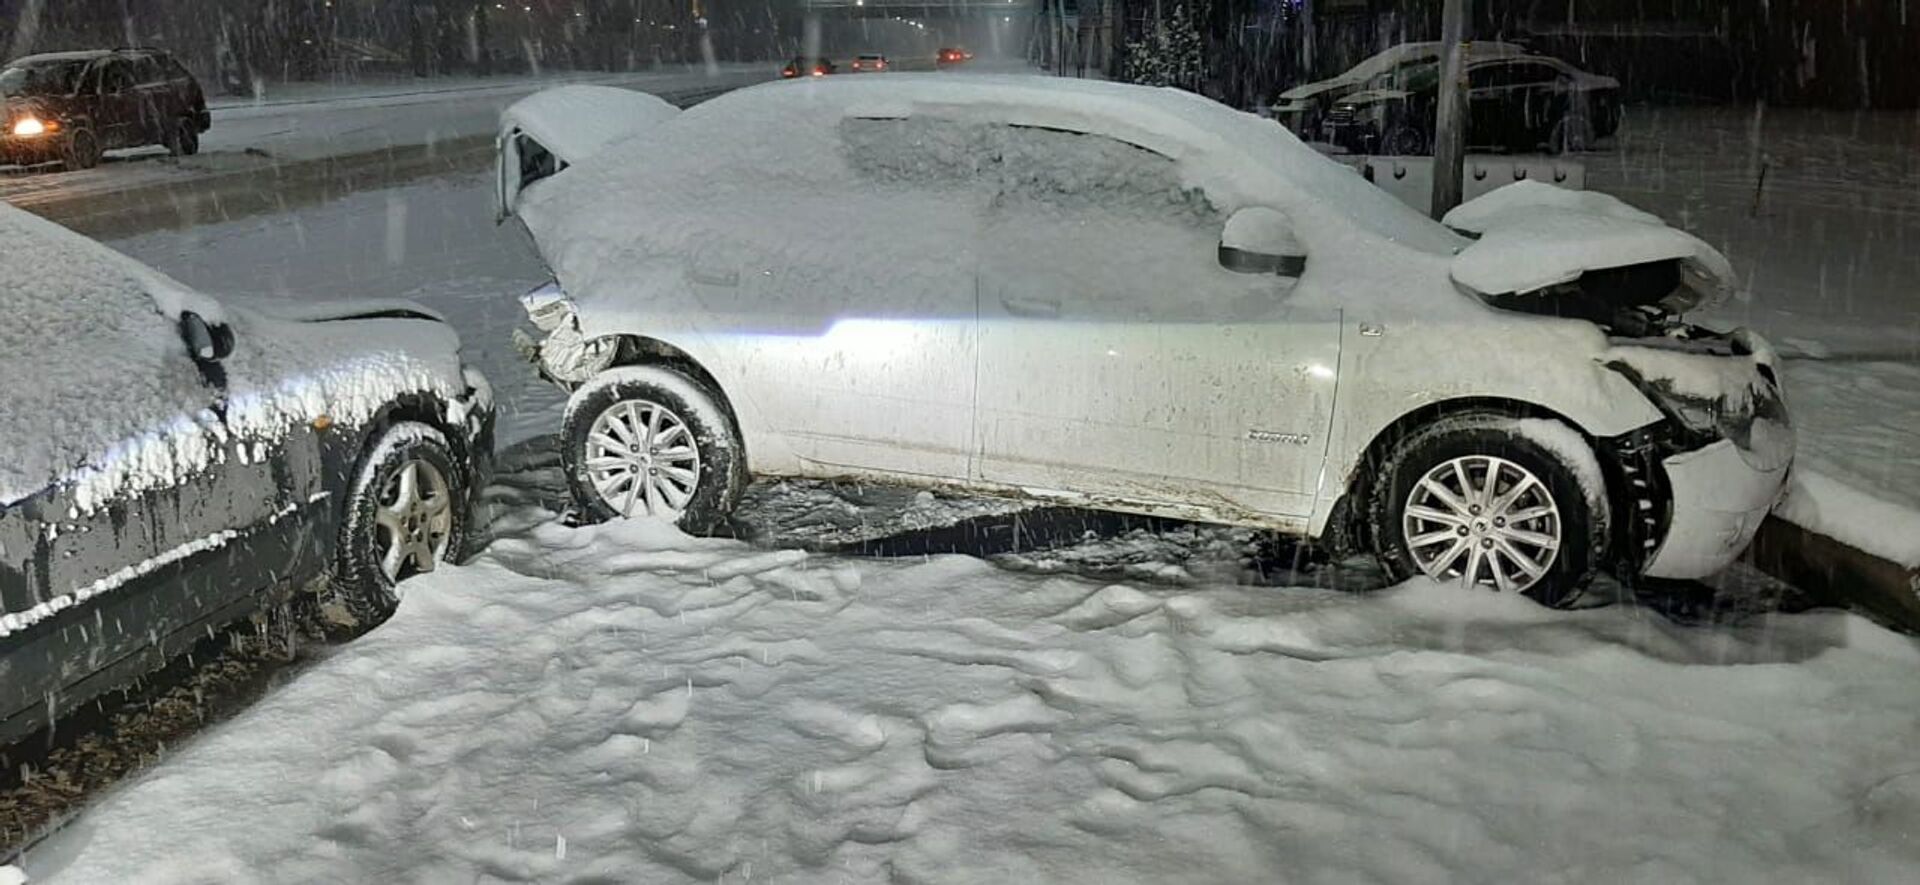 Снегопад привел к массовому ДТП в Алматы: пострадали пять человек - Sputnik Казахстан, 1920, 10.02.2021